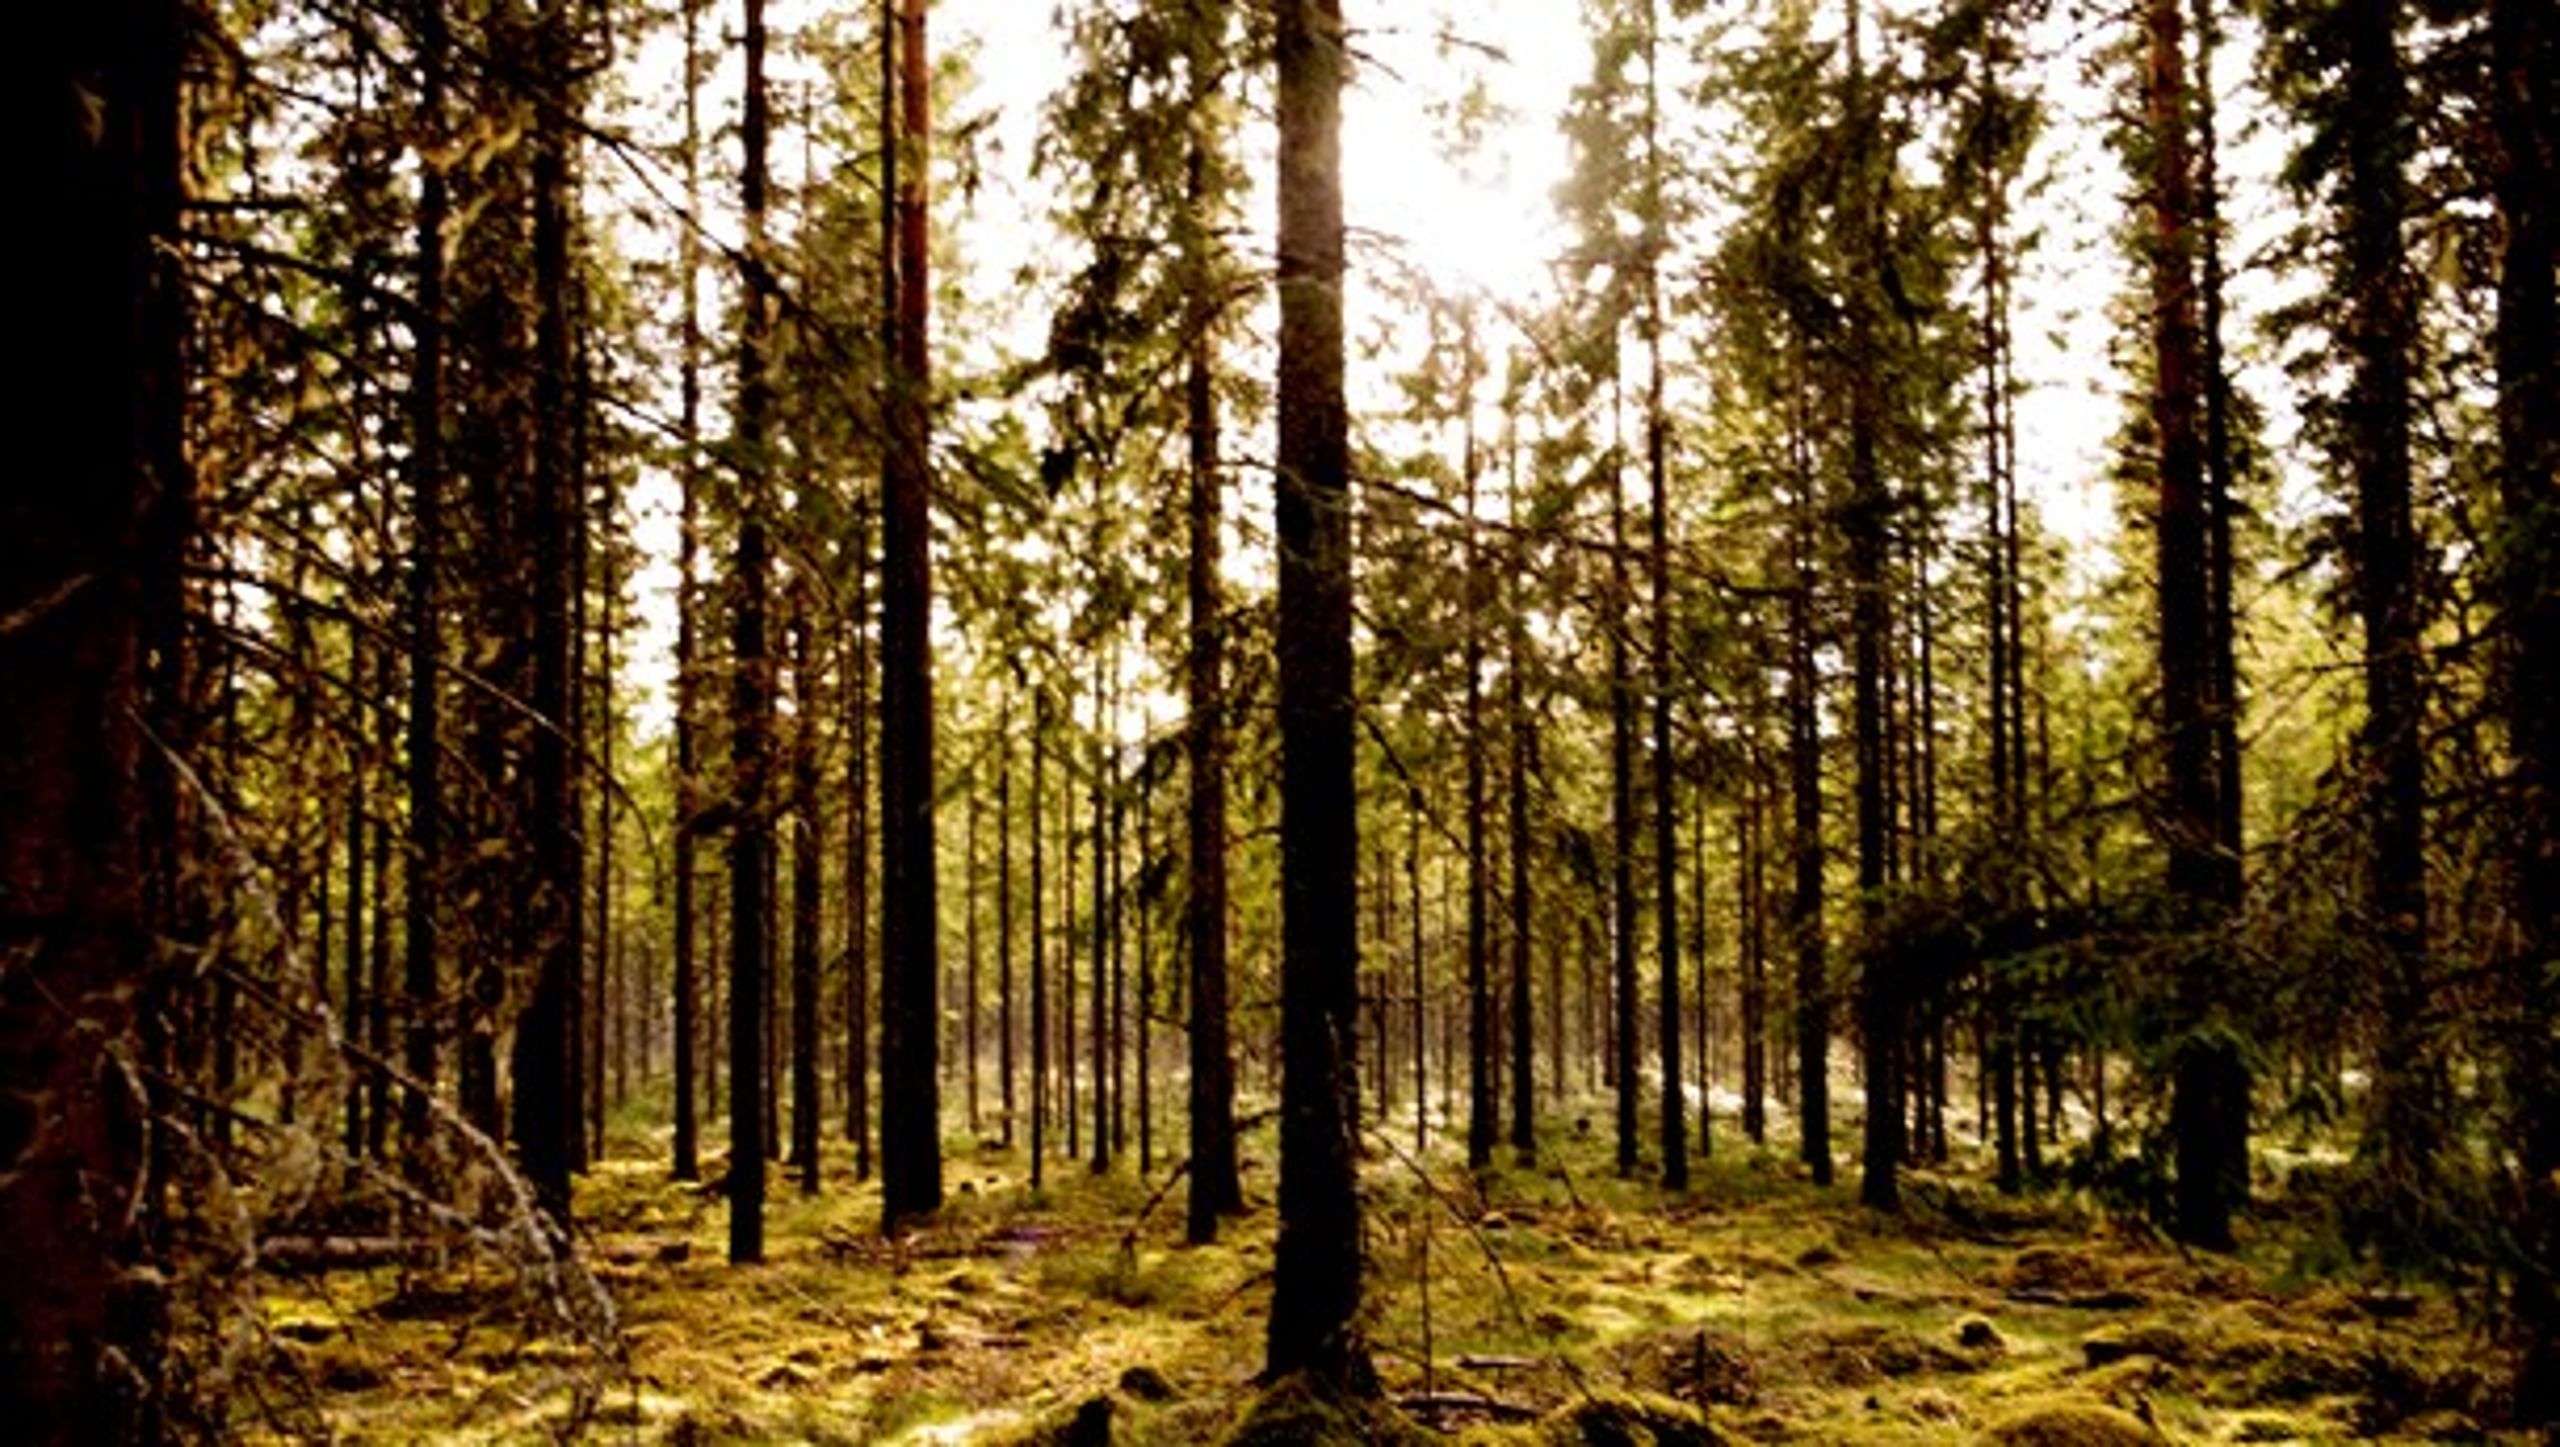 En fornuftig anvendelse af skovenes restprodukter er sundt for nationaløkonomien, antallet af arbejdspladser og for klimaet, skriver medlemmer af Træ til Energi.